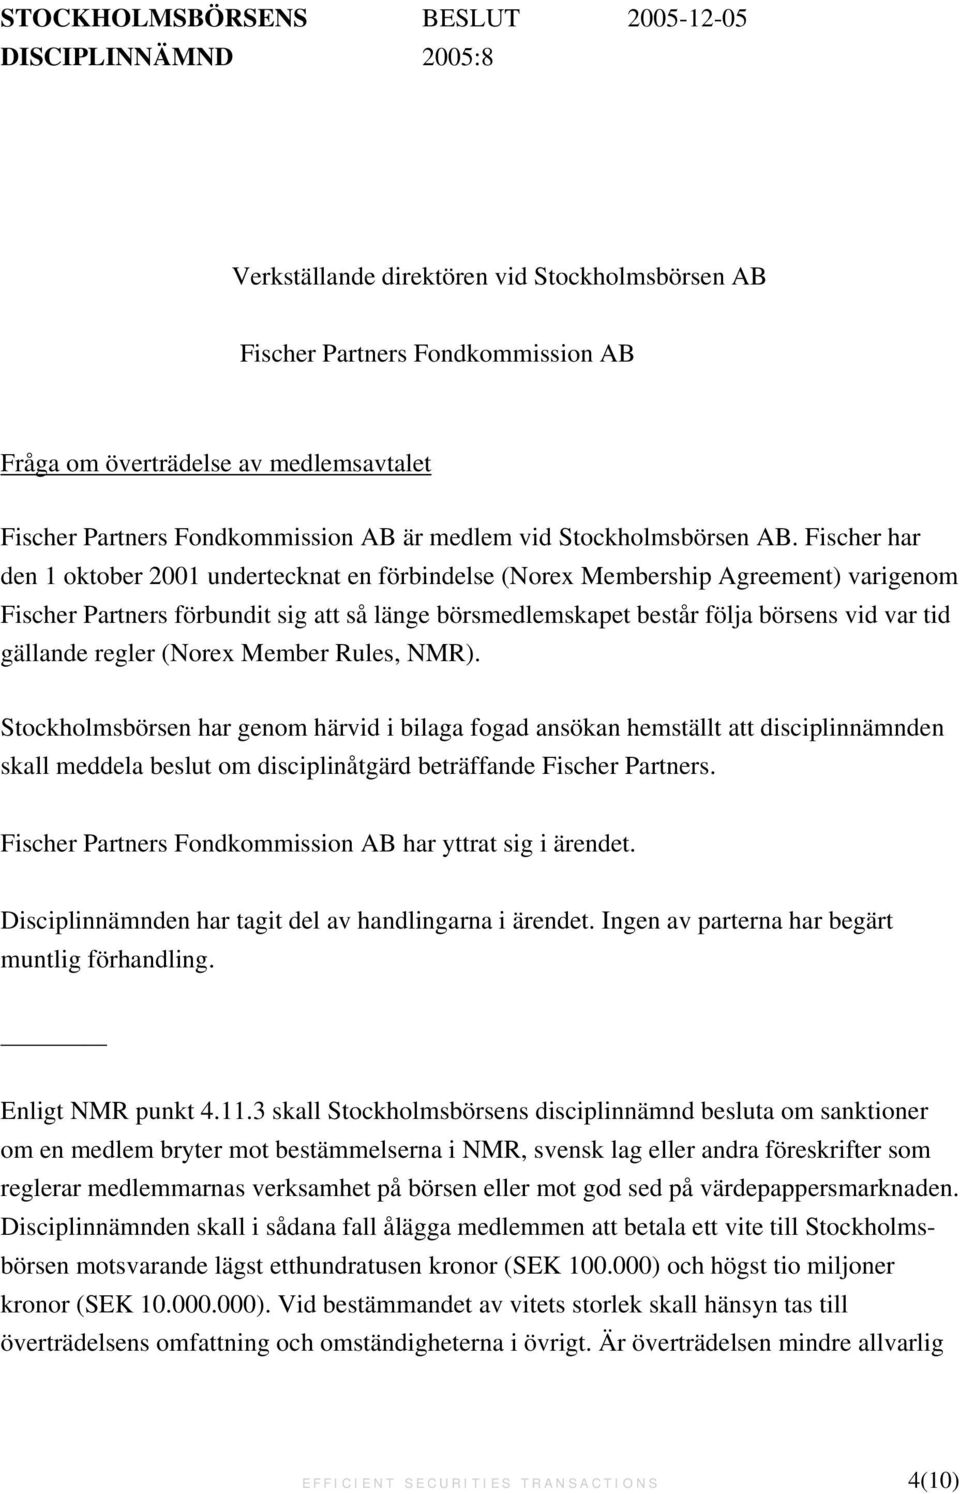 Fischer har den 1 oktober 2001 undertecknat en förbindelse (Norex Membership Agreement) varigenom Fischer Partners förbundit sig att så länge börsmedlemskapet består följa börsens vid var tid